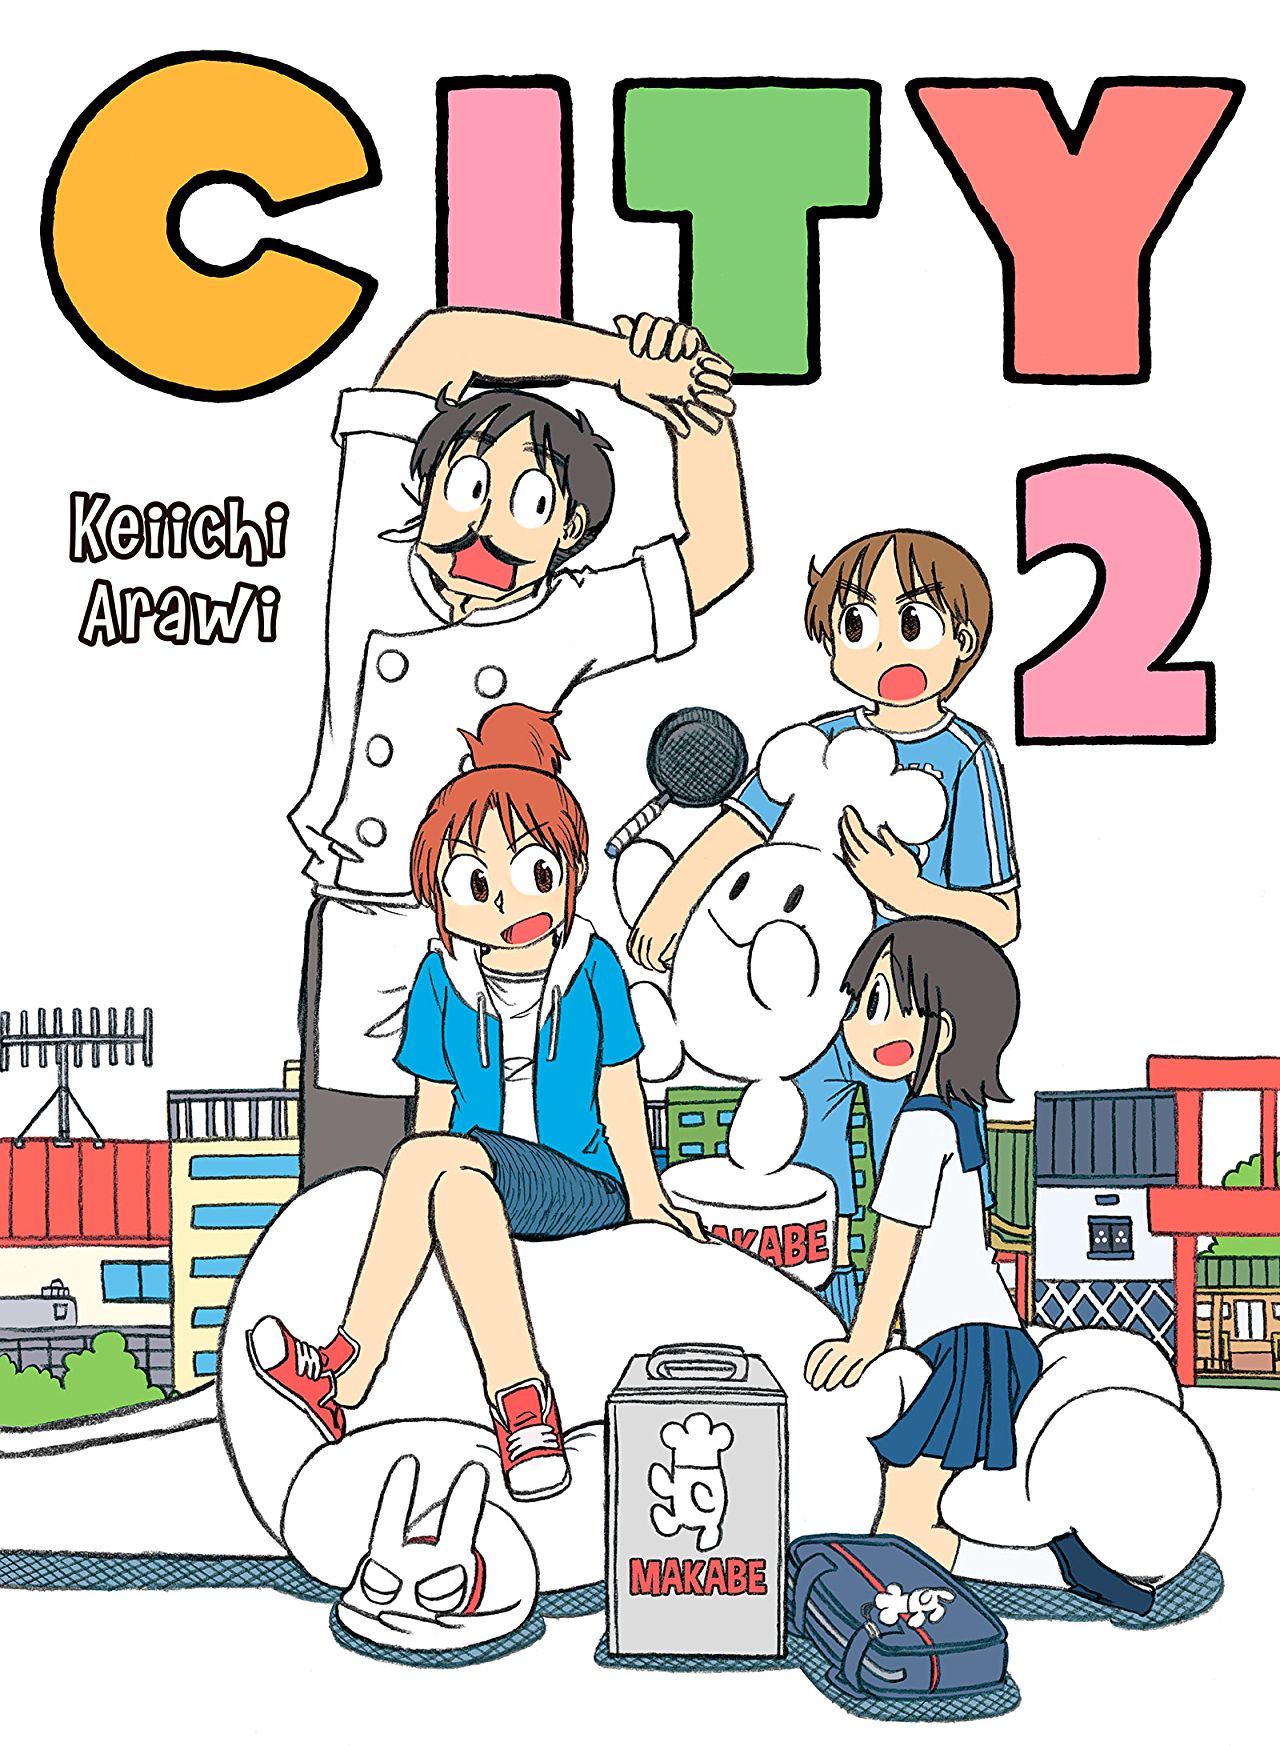 City Vol. 2 Review